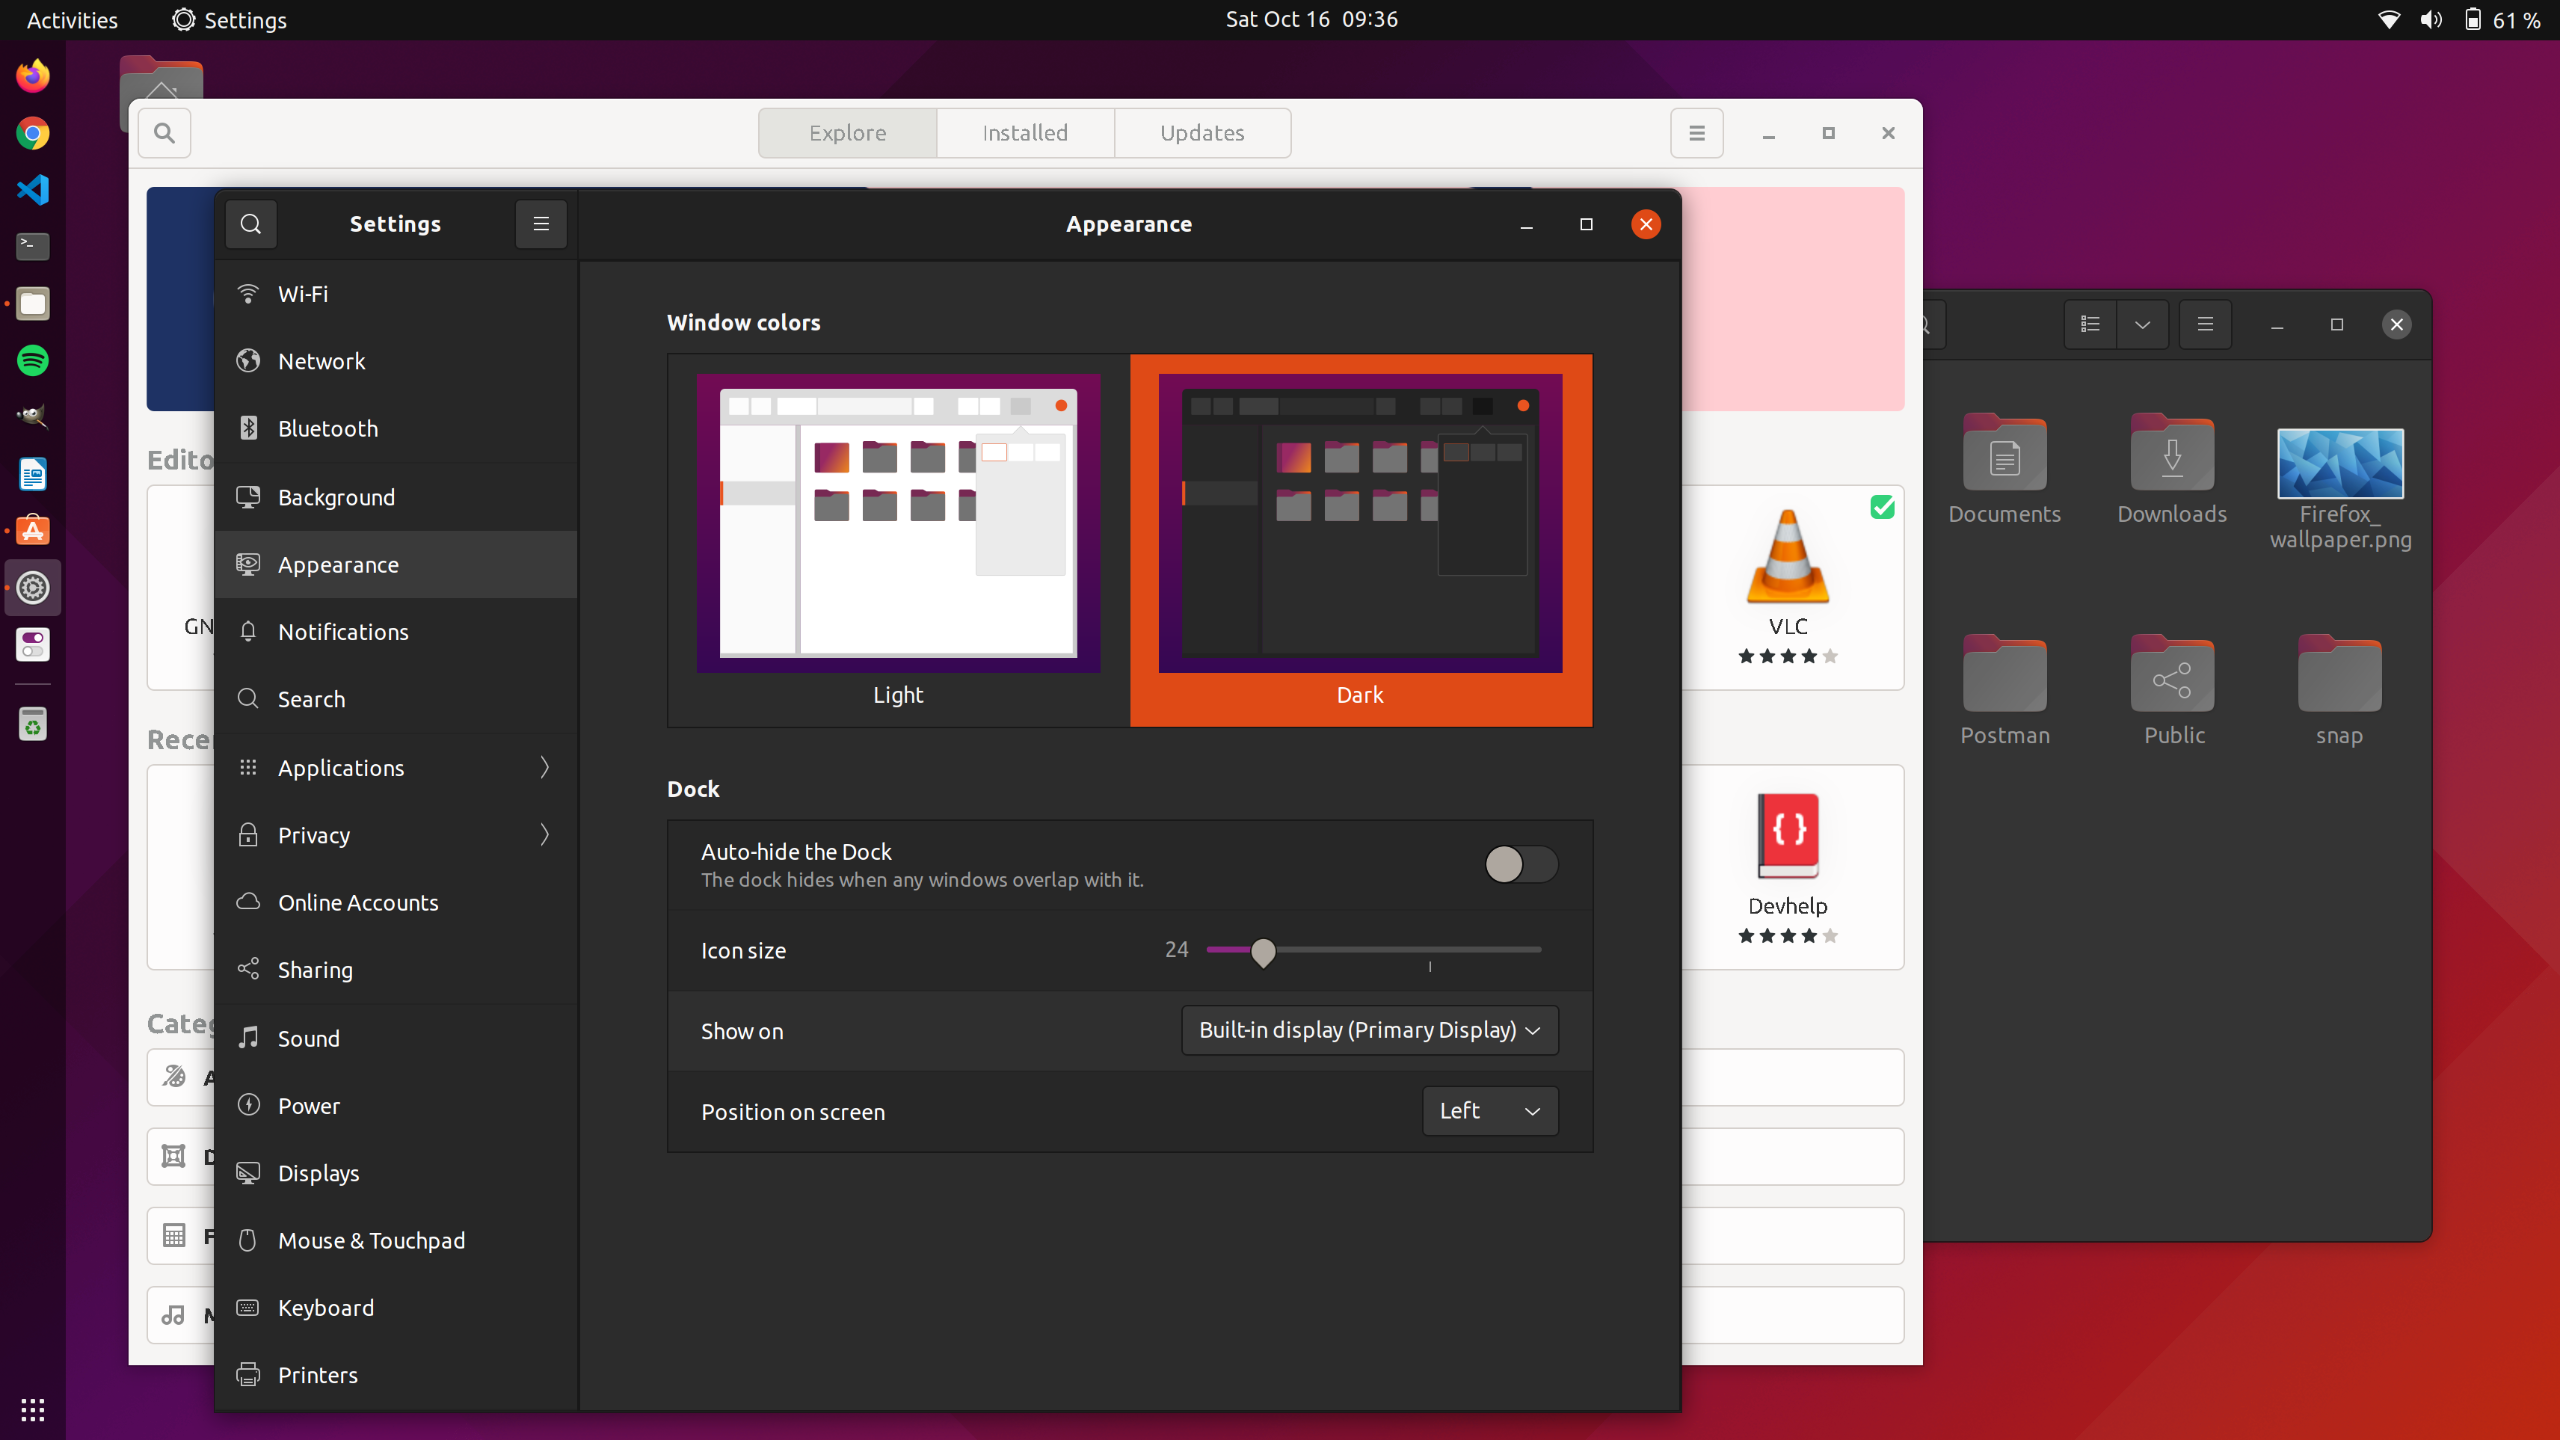 ubuntu dark theme